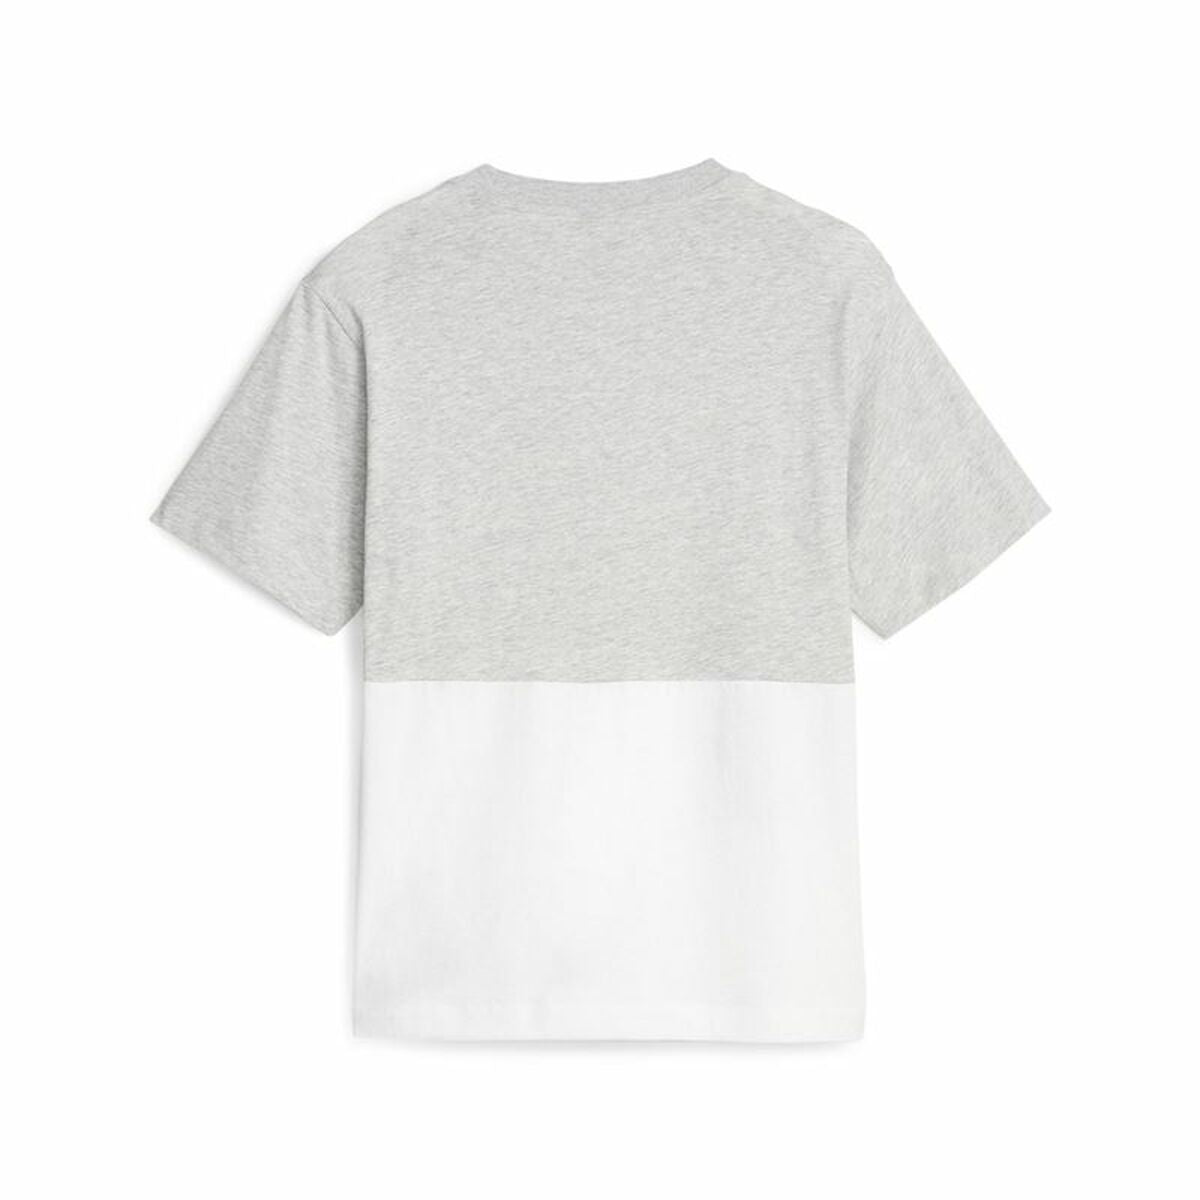 T-shirt à manches courtes femme Puma Power Colorblock Blanc Gris